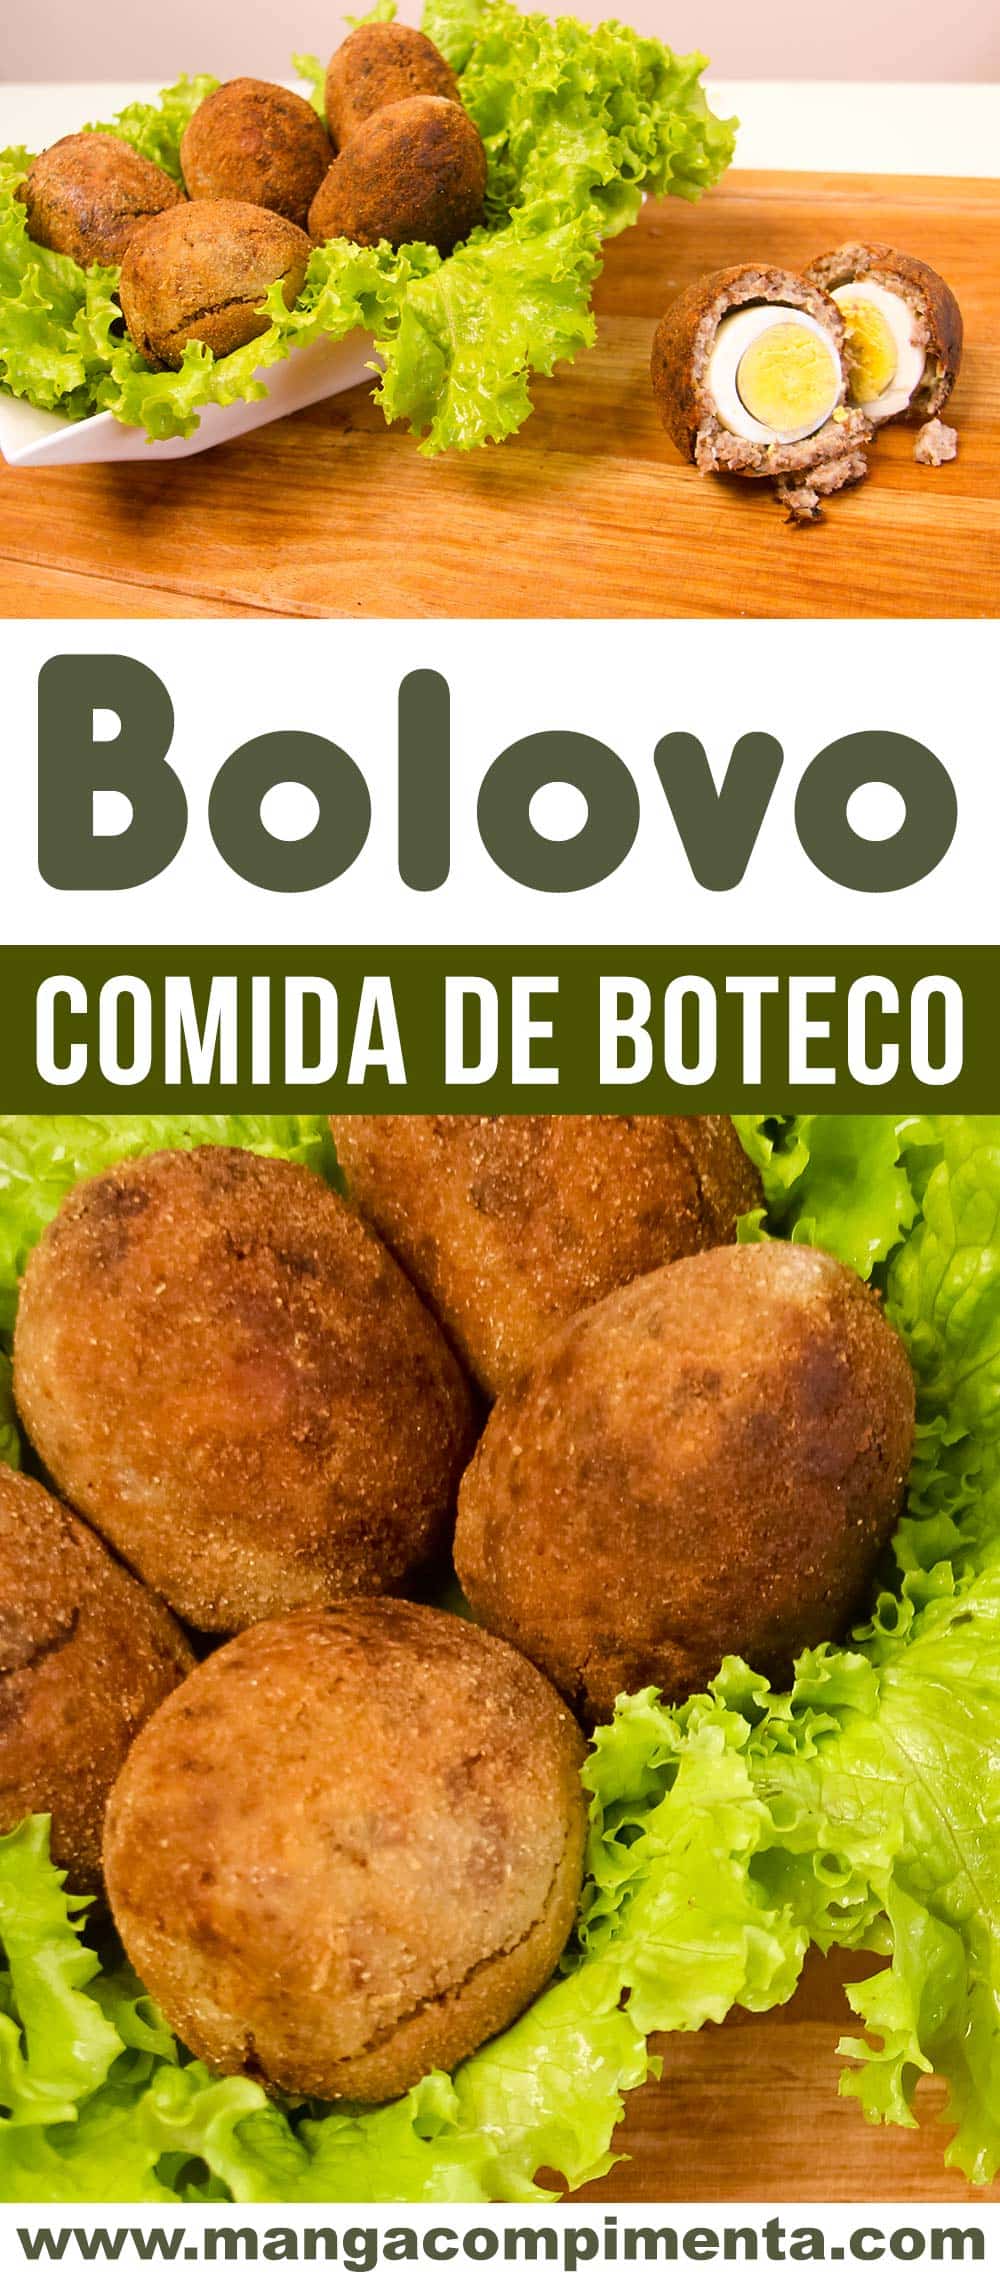 Bolovo - Comida de Boteco, perfeito para petiscar com os amigos!